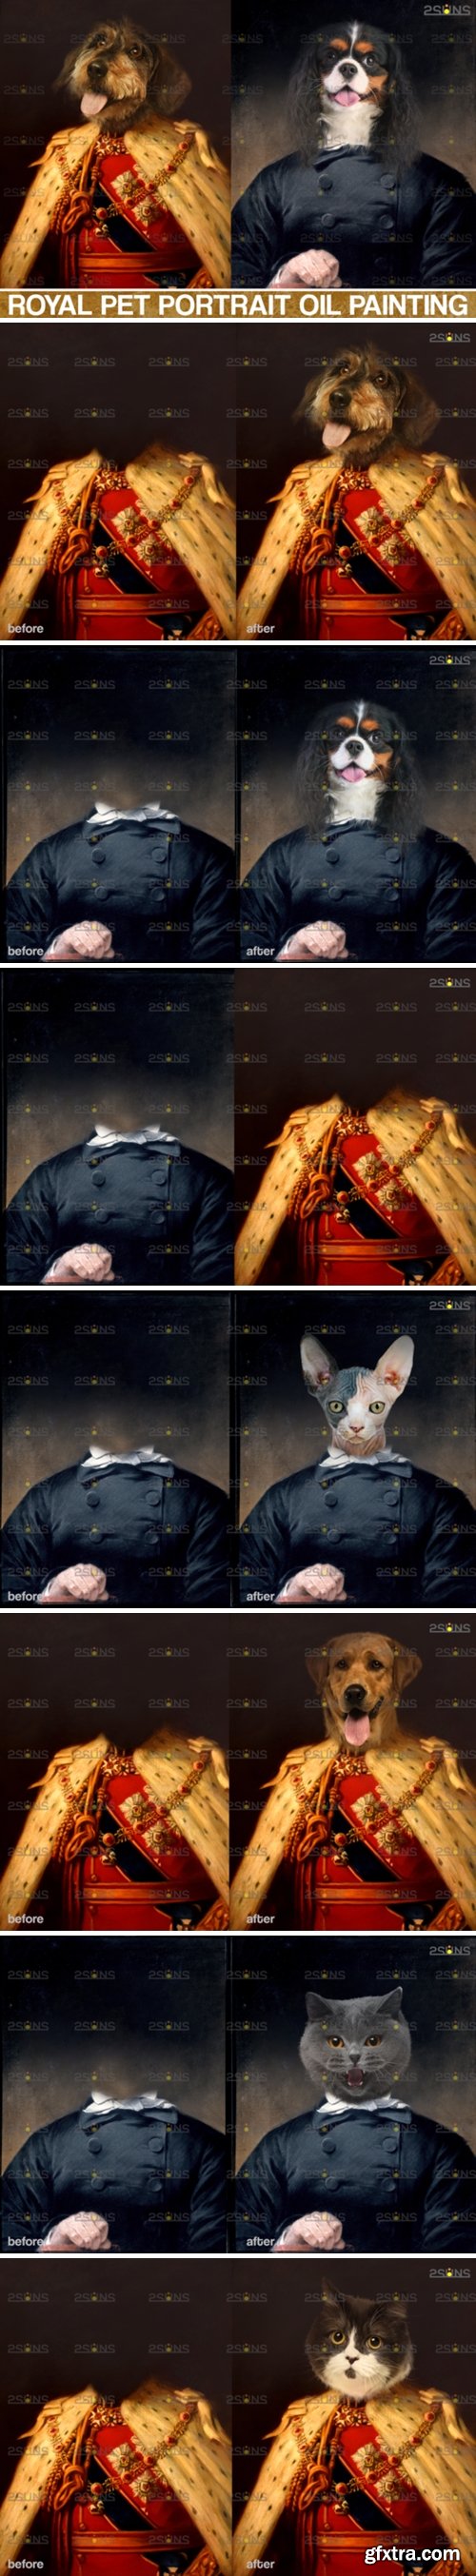 Royal Pet Portrait Templates Photoshop 4143765